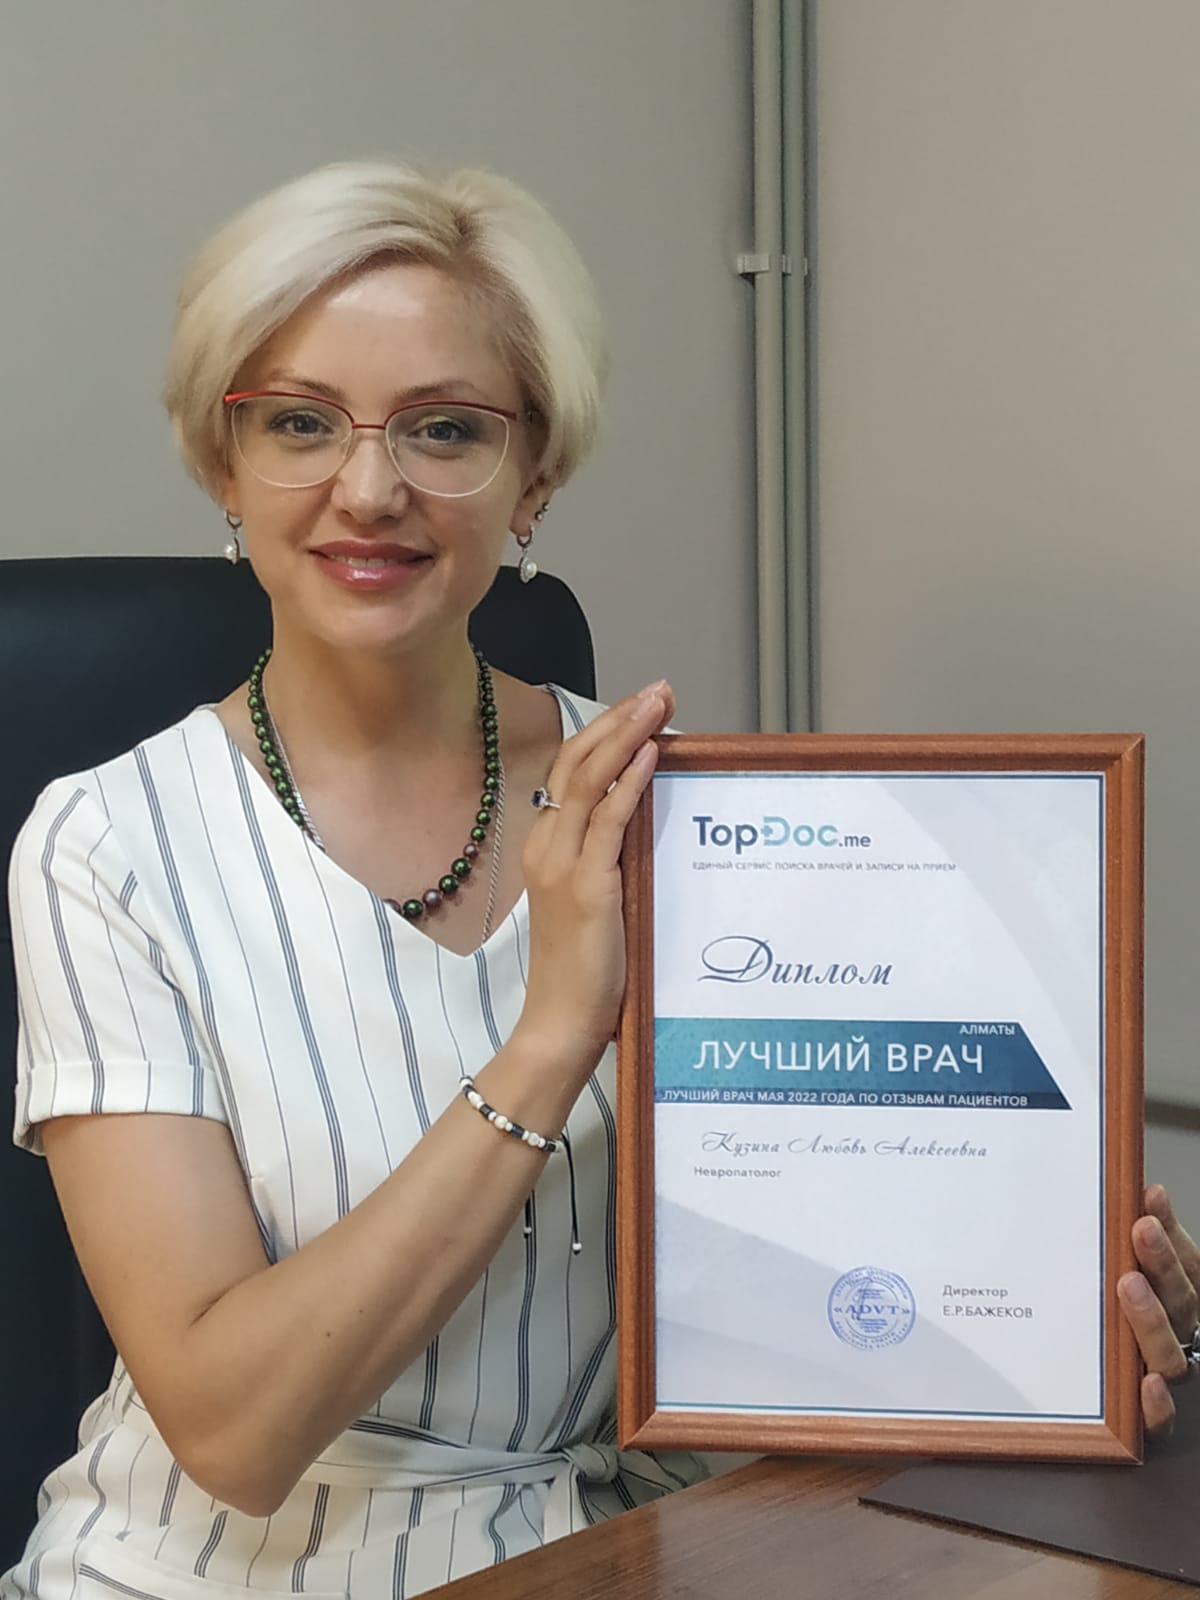 Лучший врач месяца невролог Любовь Кузина, специалист по электронейромиографии